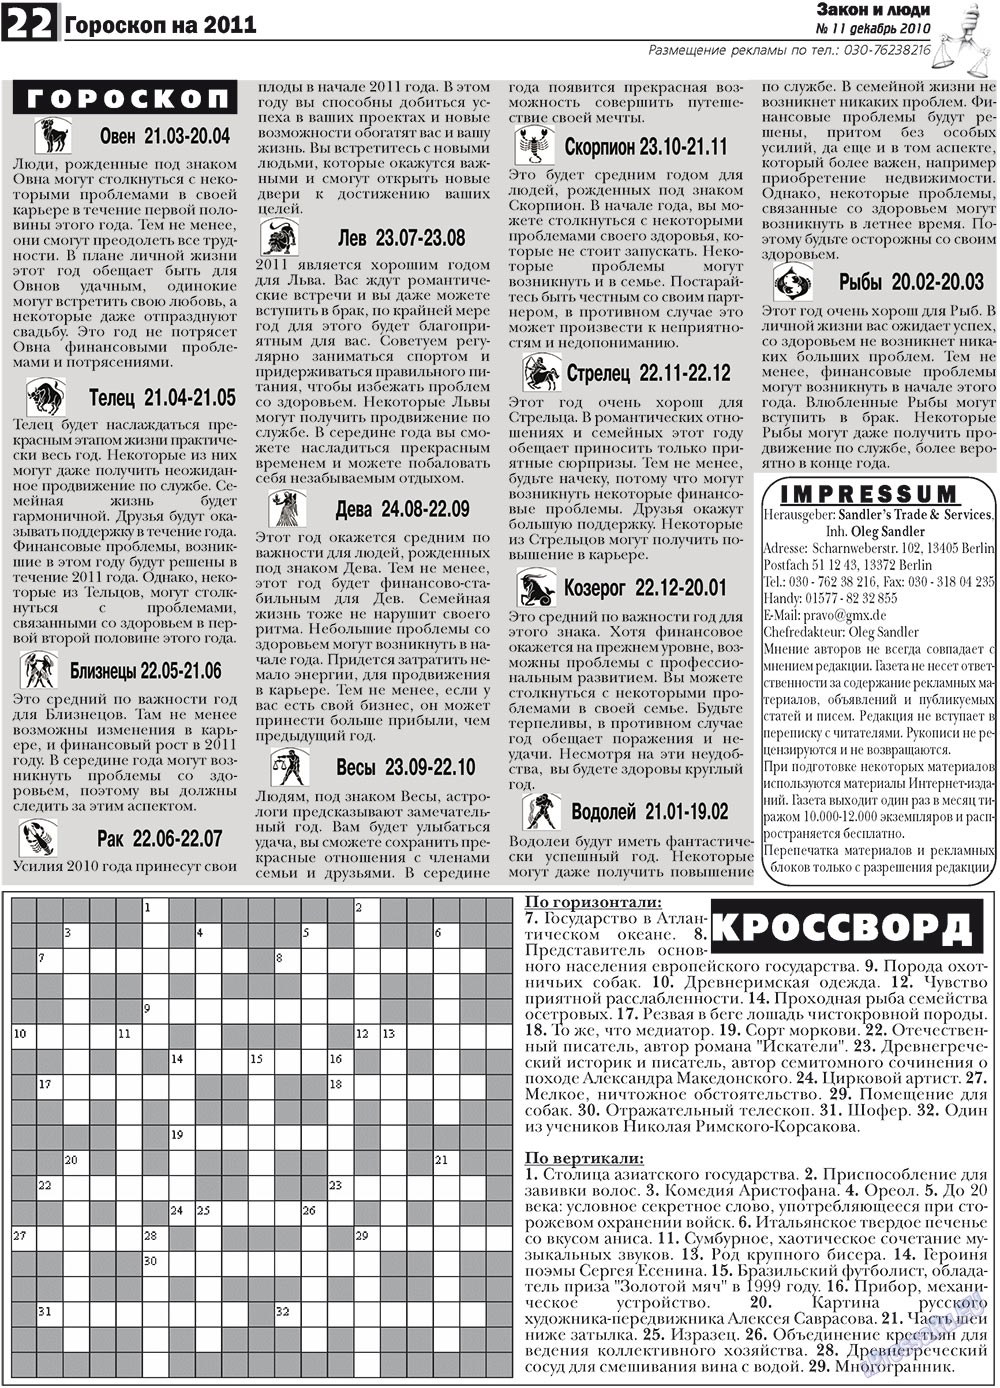 Закон и люди, газета. 2010 №11 стр.22